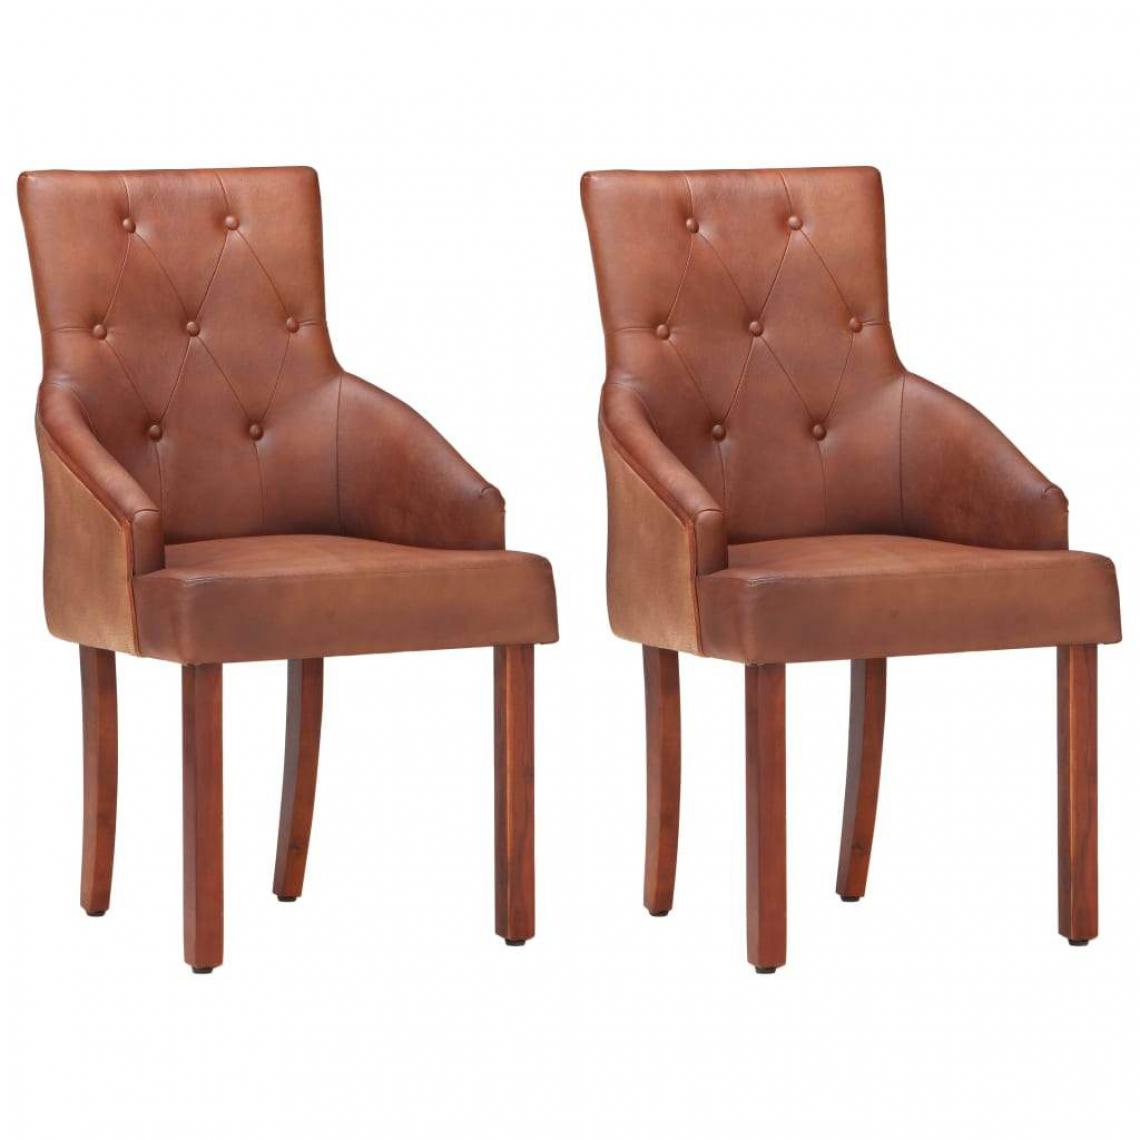 Decoshop26 - Lot de 2 chaises de salle à manger cuisine design vintage cuir de chèvre véritable marron CDS020677 - Chaises